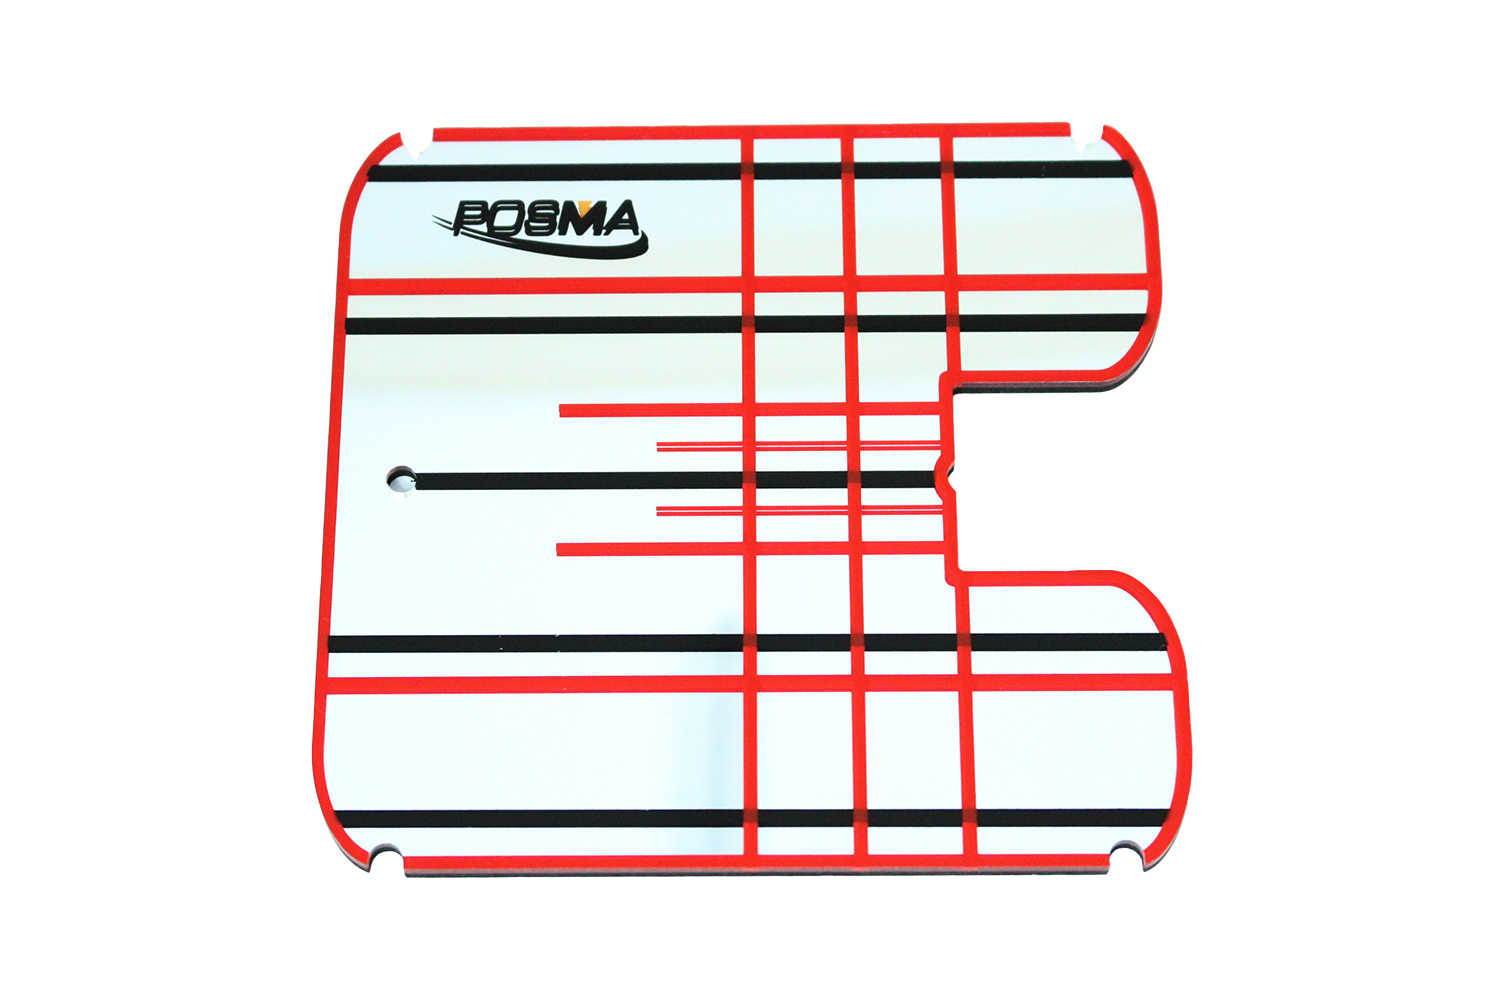 Posma PG010I 高爾夫自動回球器+練習草皮+高爾夫推桿鏡+Posma黑色束口後背包